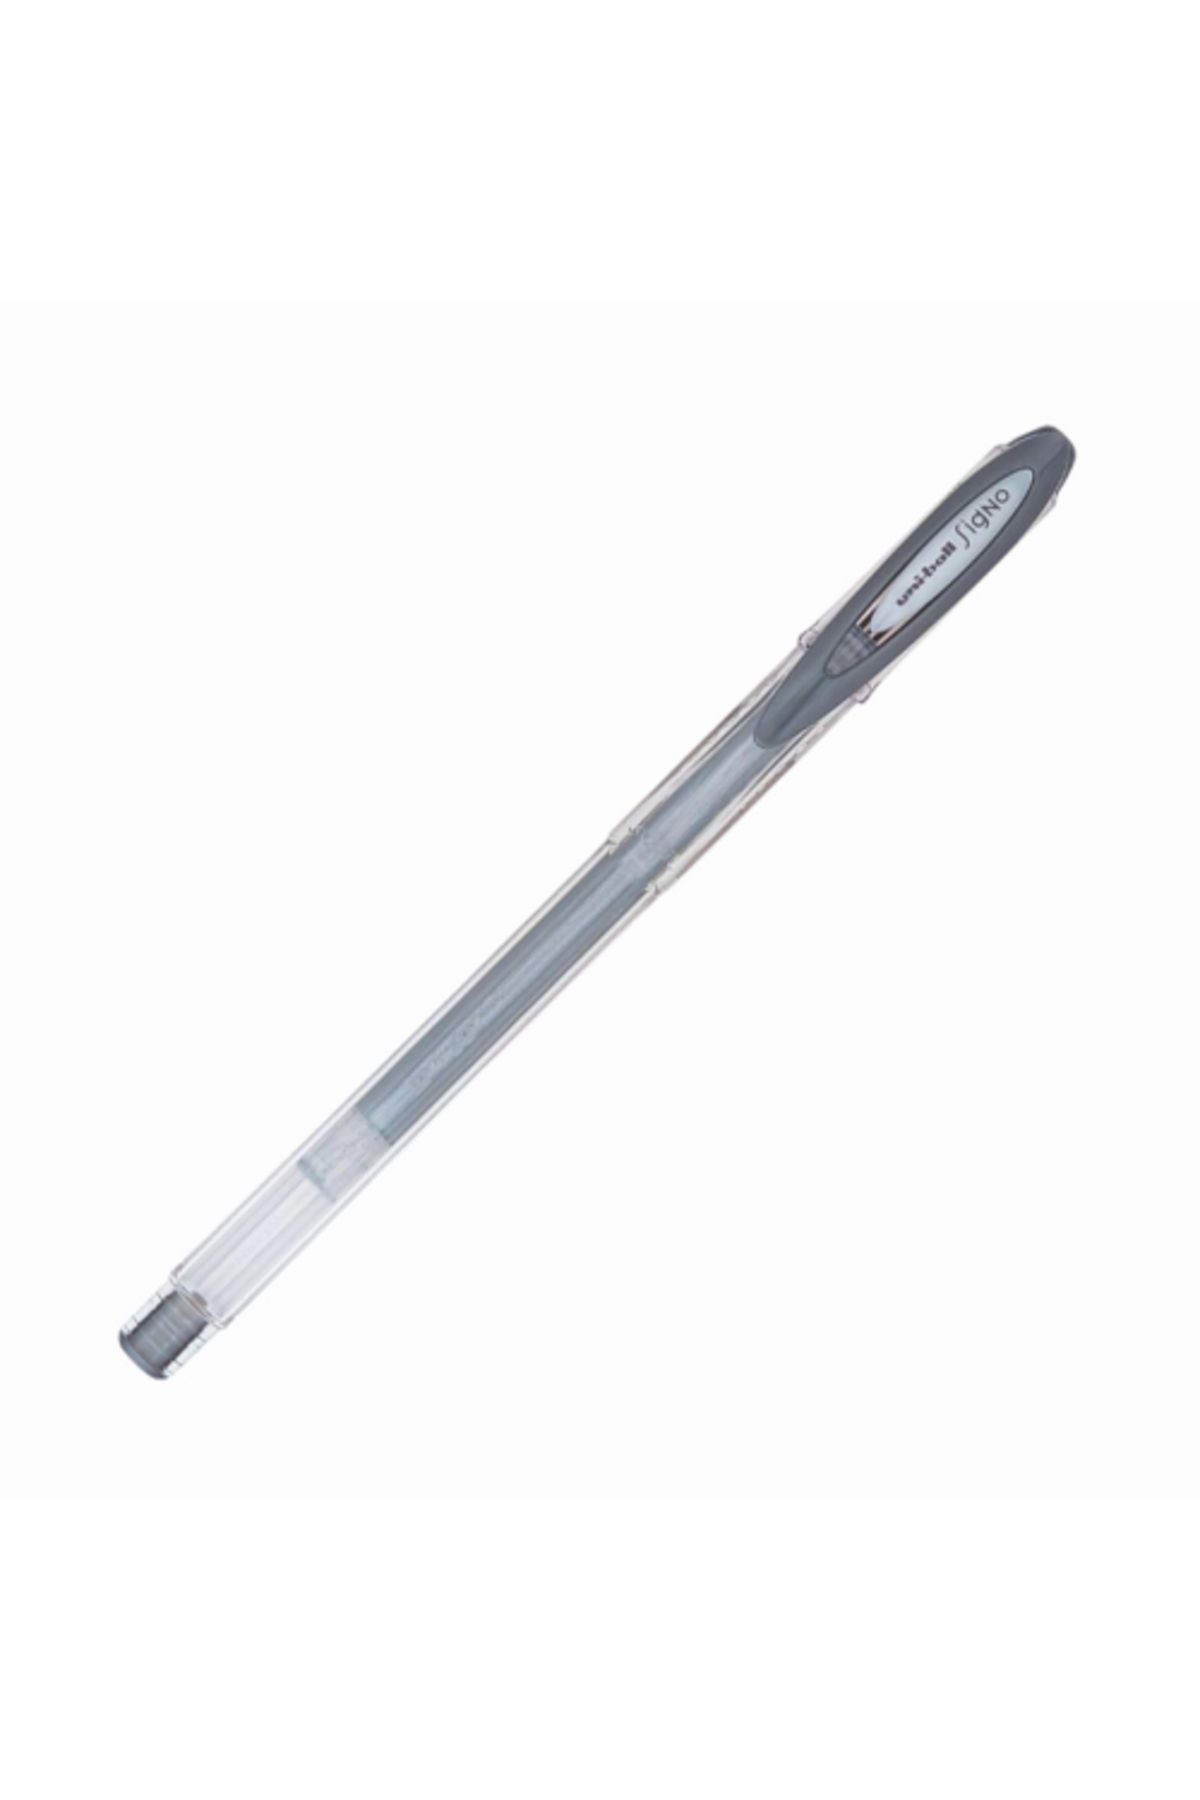 Uni -ball Signo Noble Metal Yaldızlı Kalem Gümüş